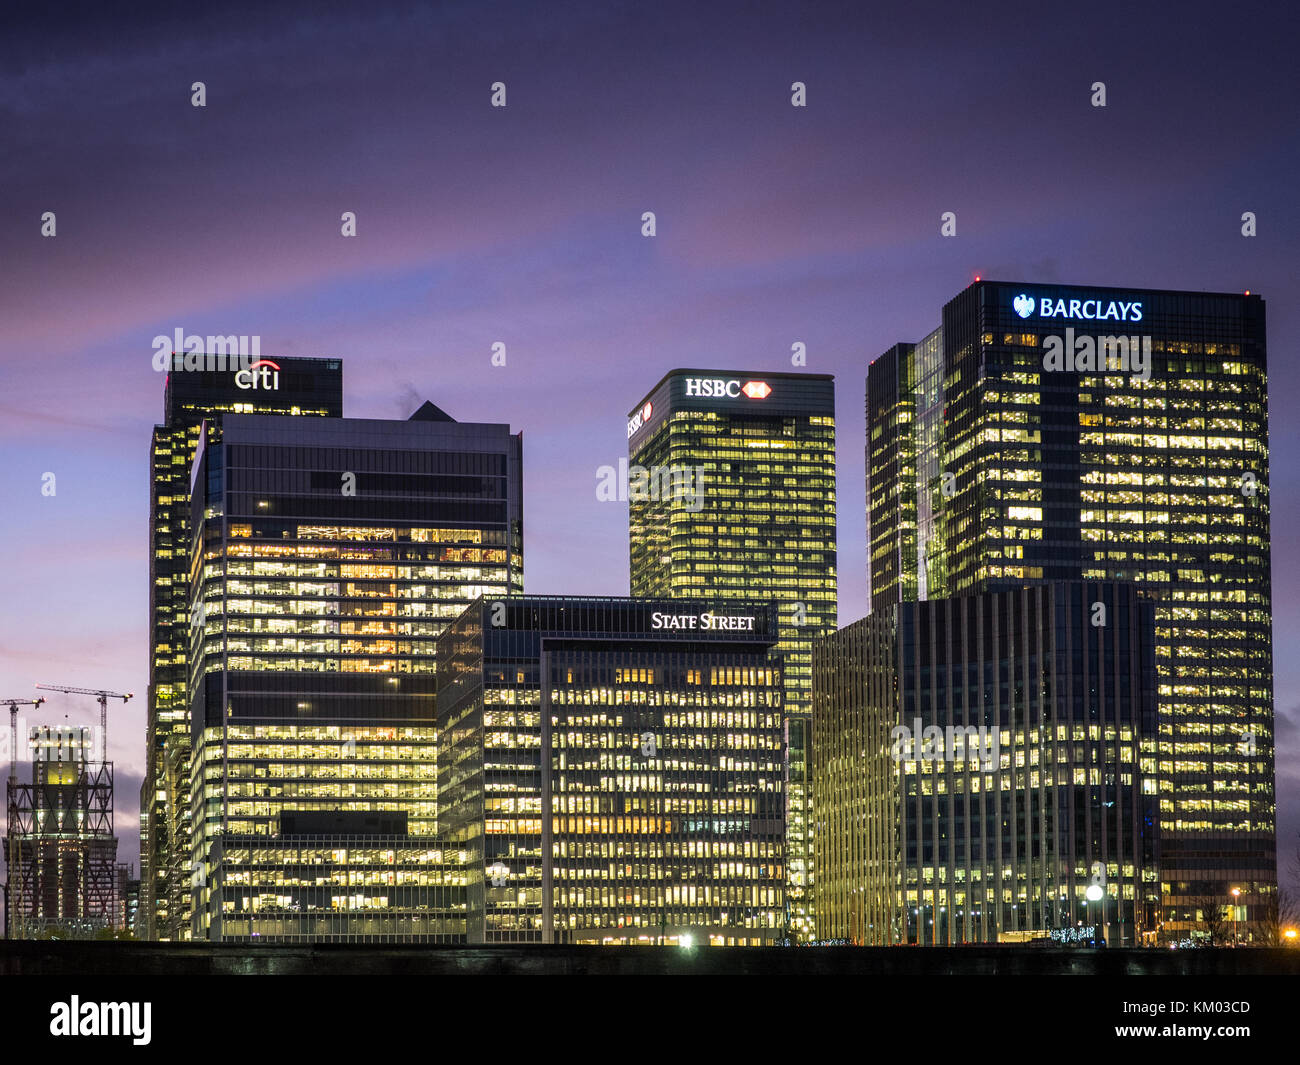 Die Banken in London, Canary Wharf in der Dämmerung - Barclays, HSBC, State Street, CitiBank Stockfoto